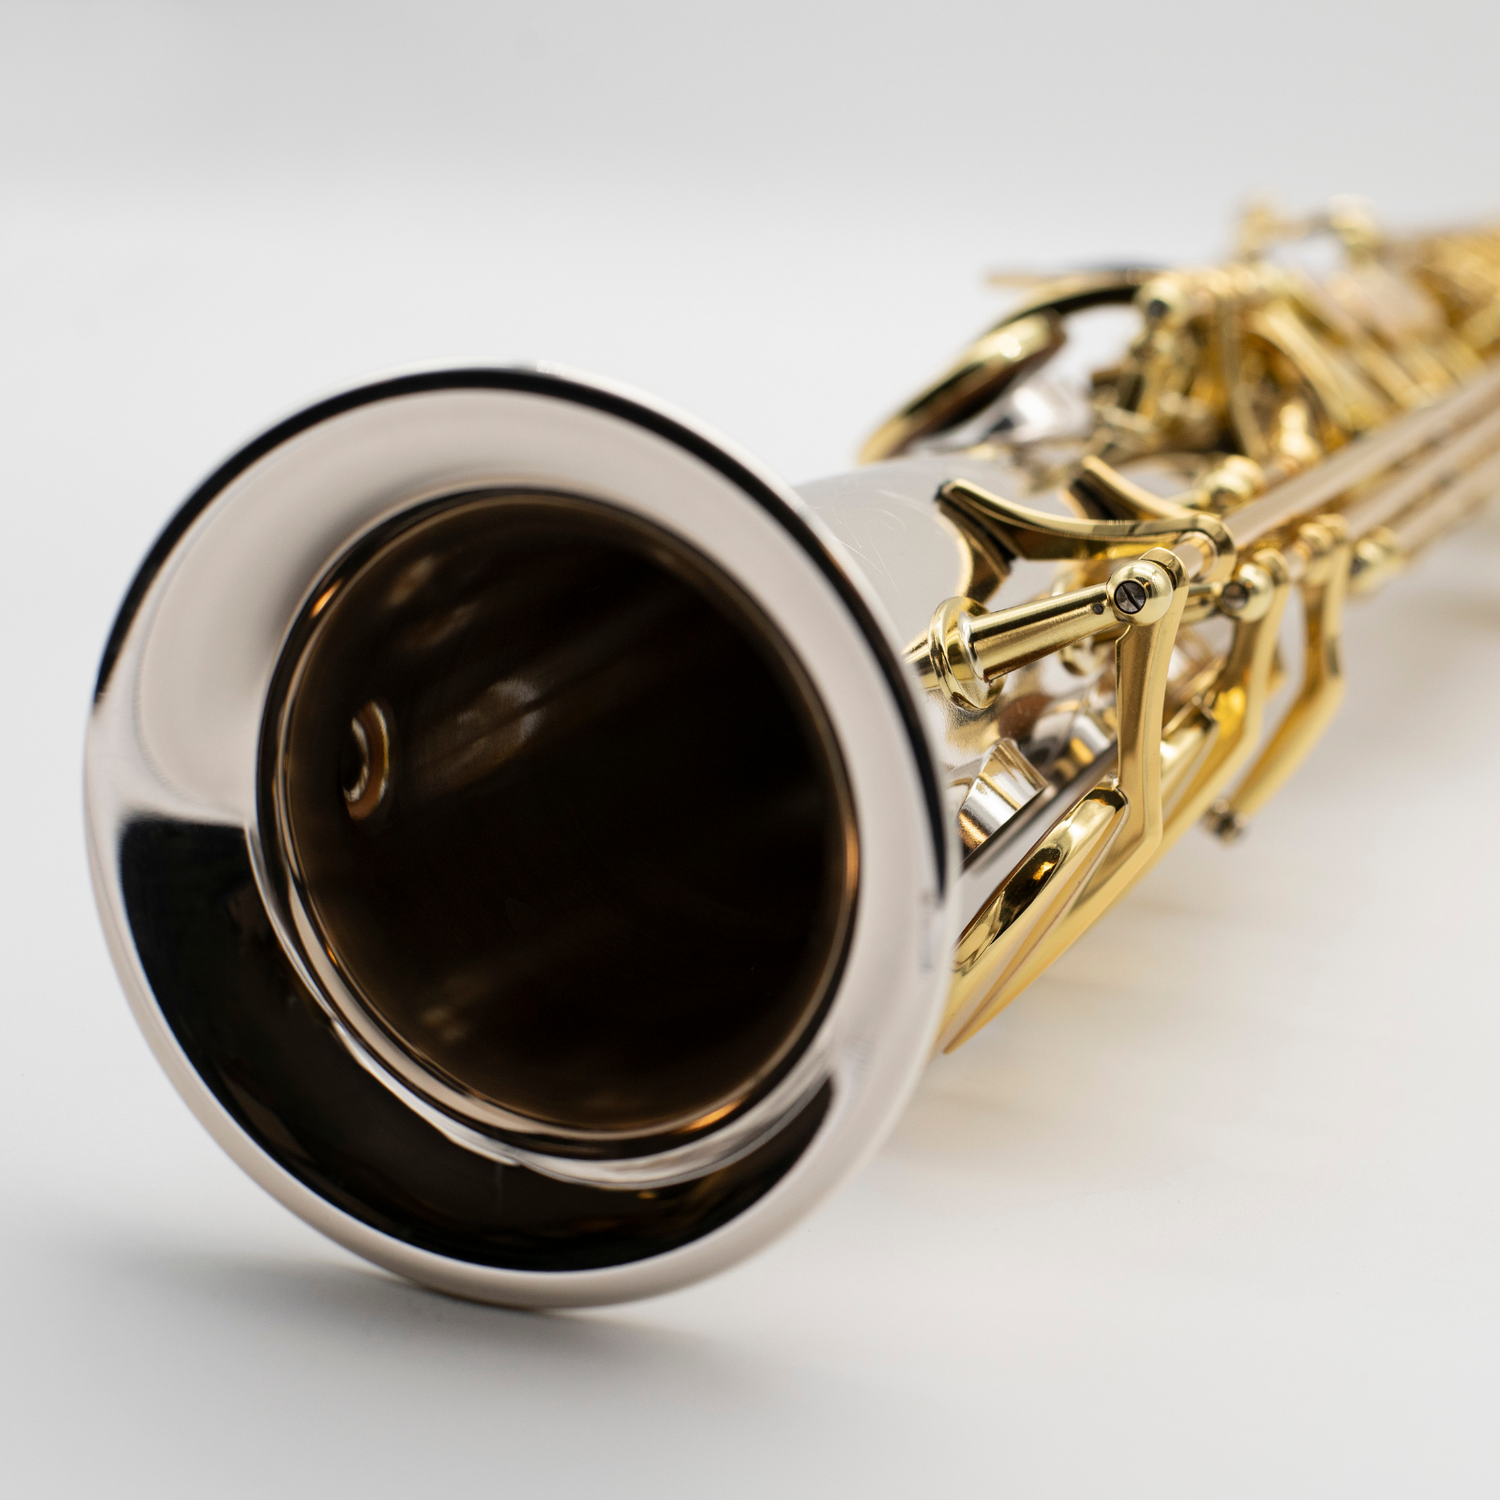 Soprano saxophones